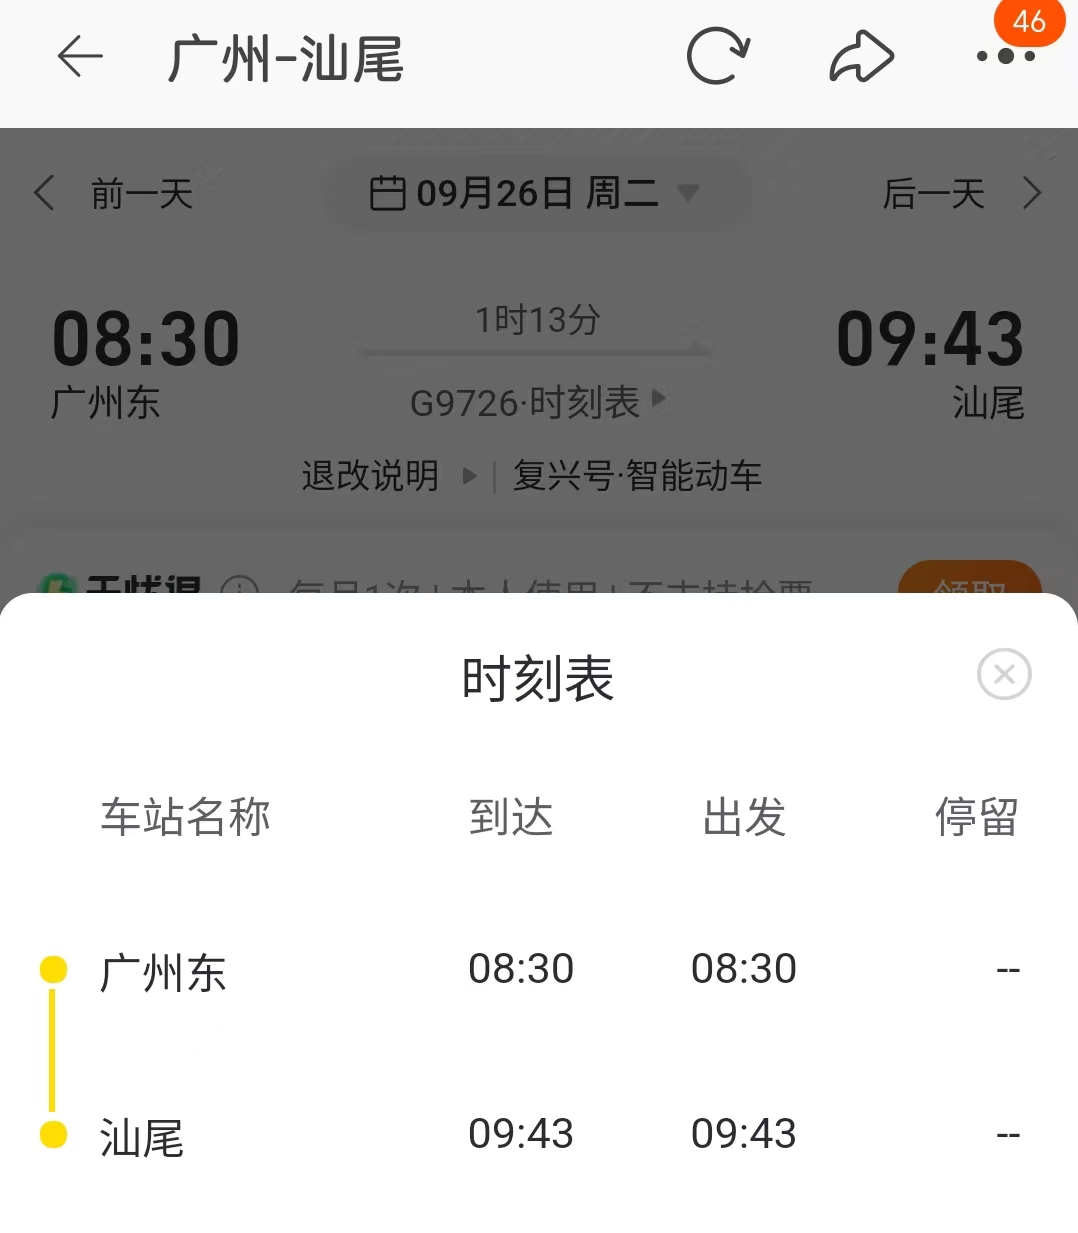 车票开售！广汕高铁9月26日开通营运